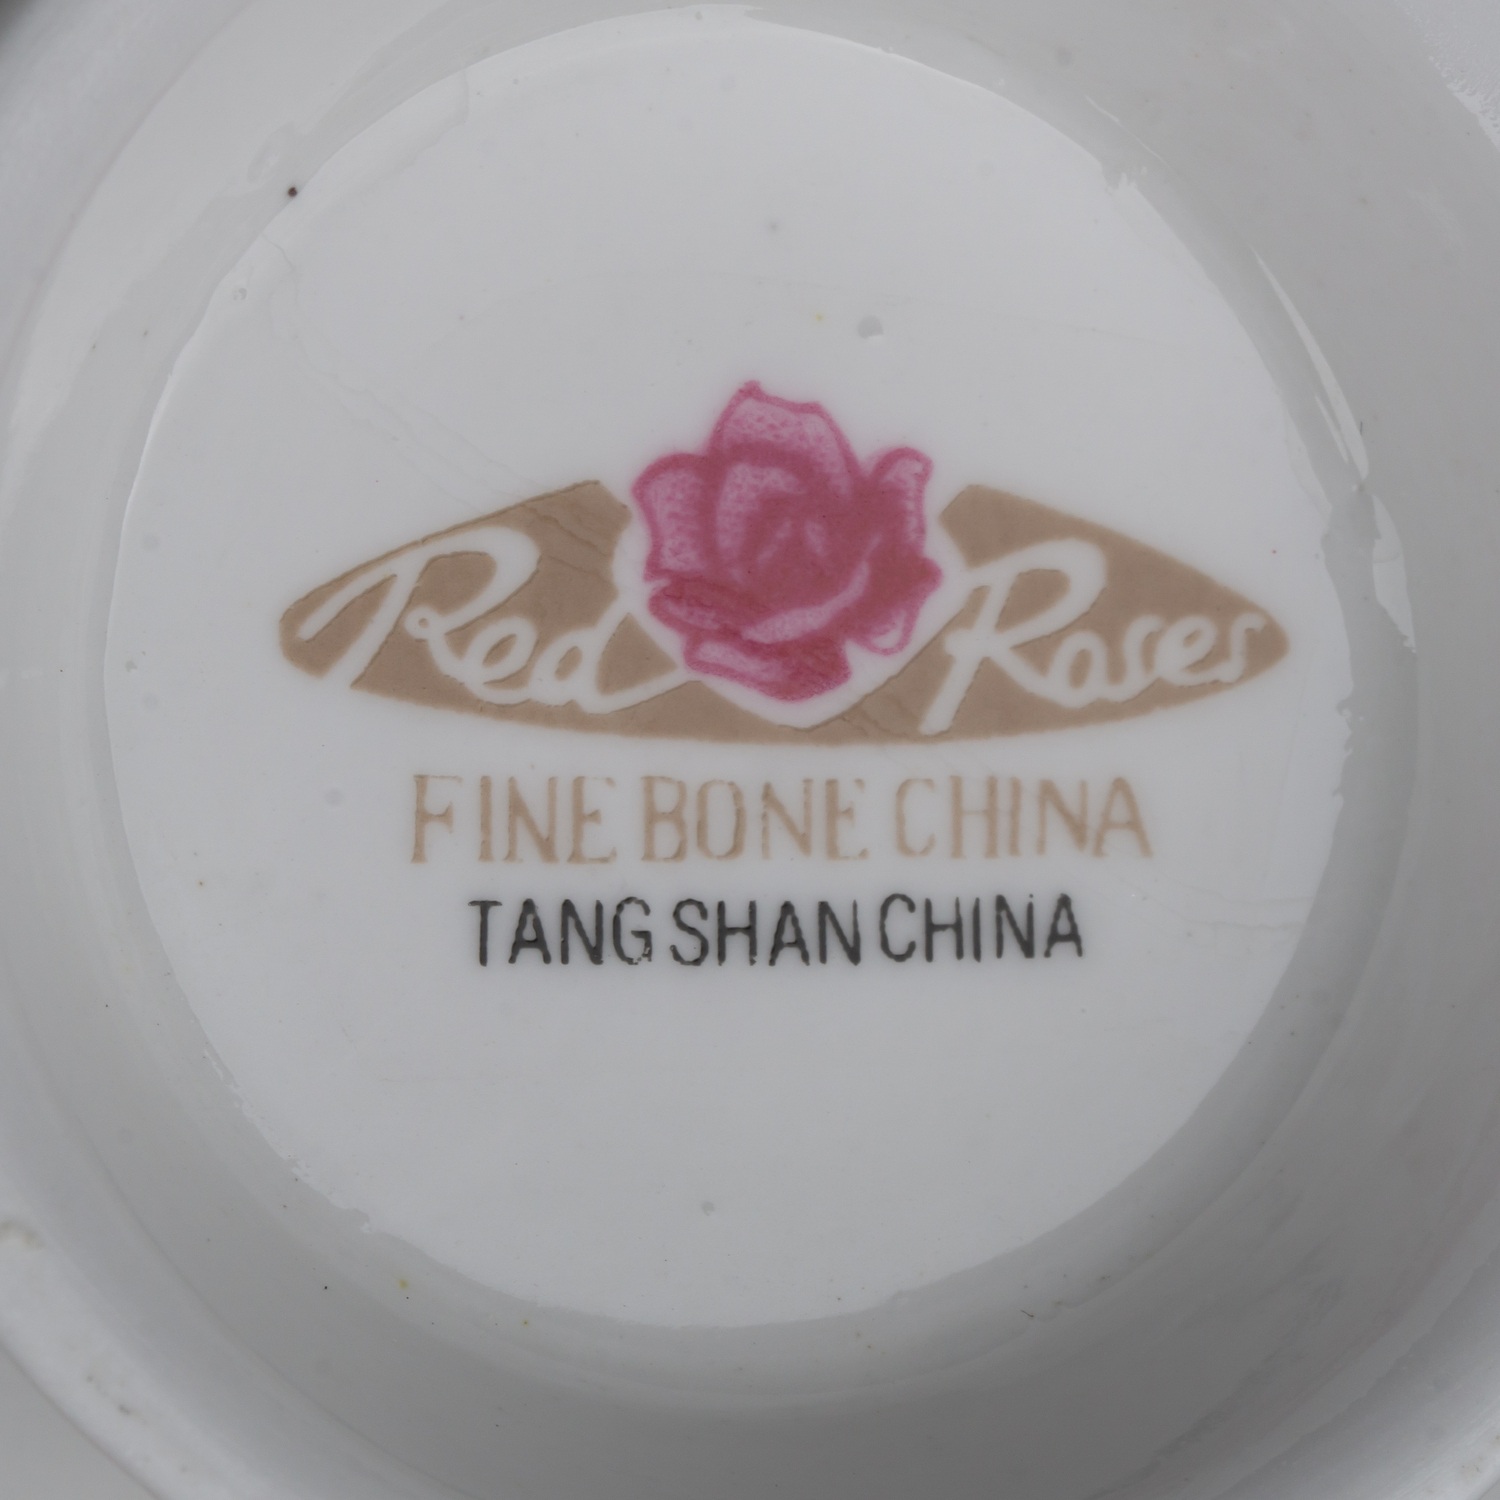 Сервиз кофейный с узором в виде полевых цветов. Китай, Таншаньская фабрика костяного фарфора с красной розой, 1970-е годы.